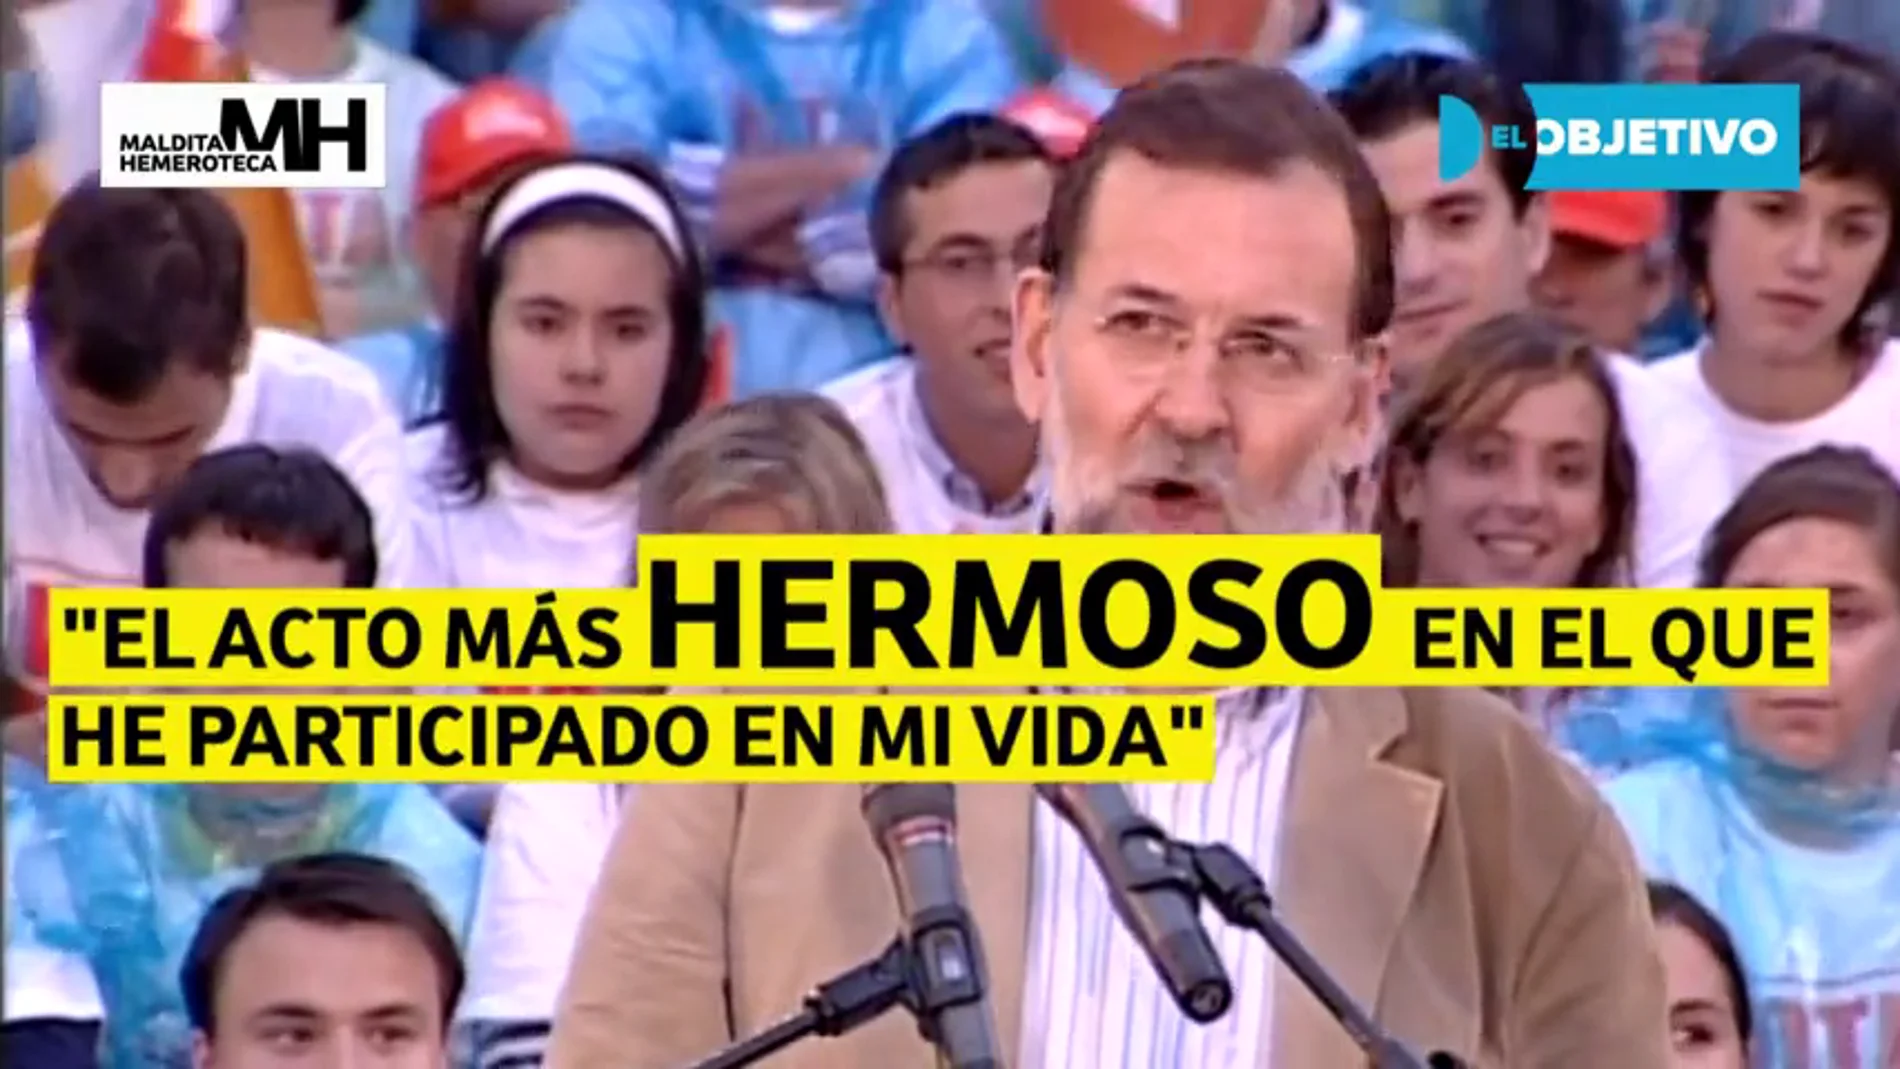 Cuando Rajoy le emocionaban los actos pagados por la Gürtel, según Costa 